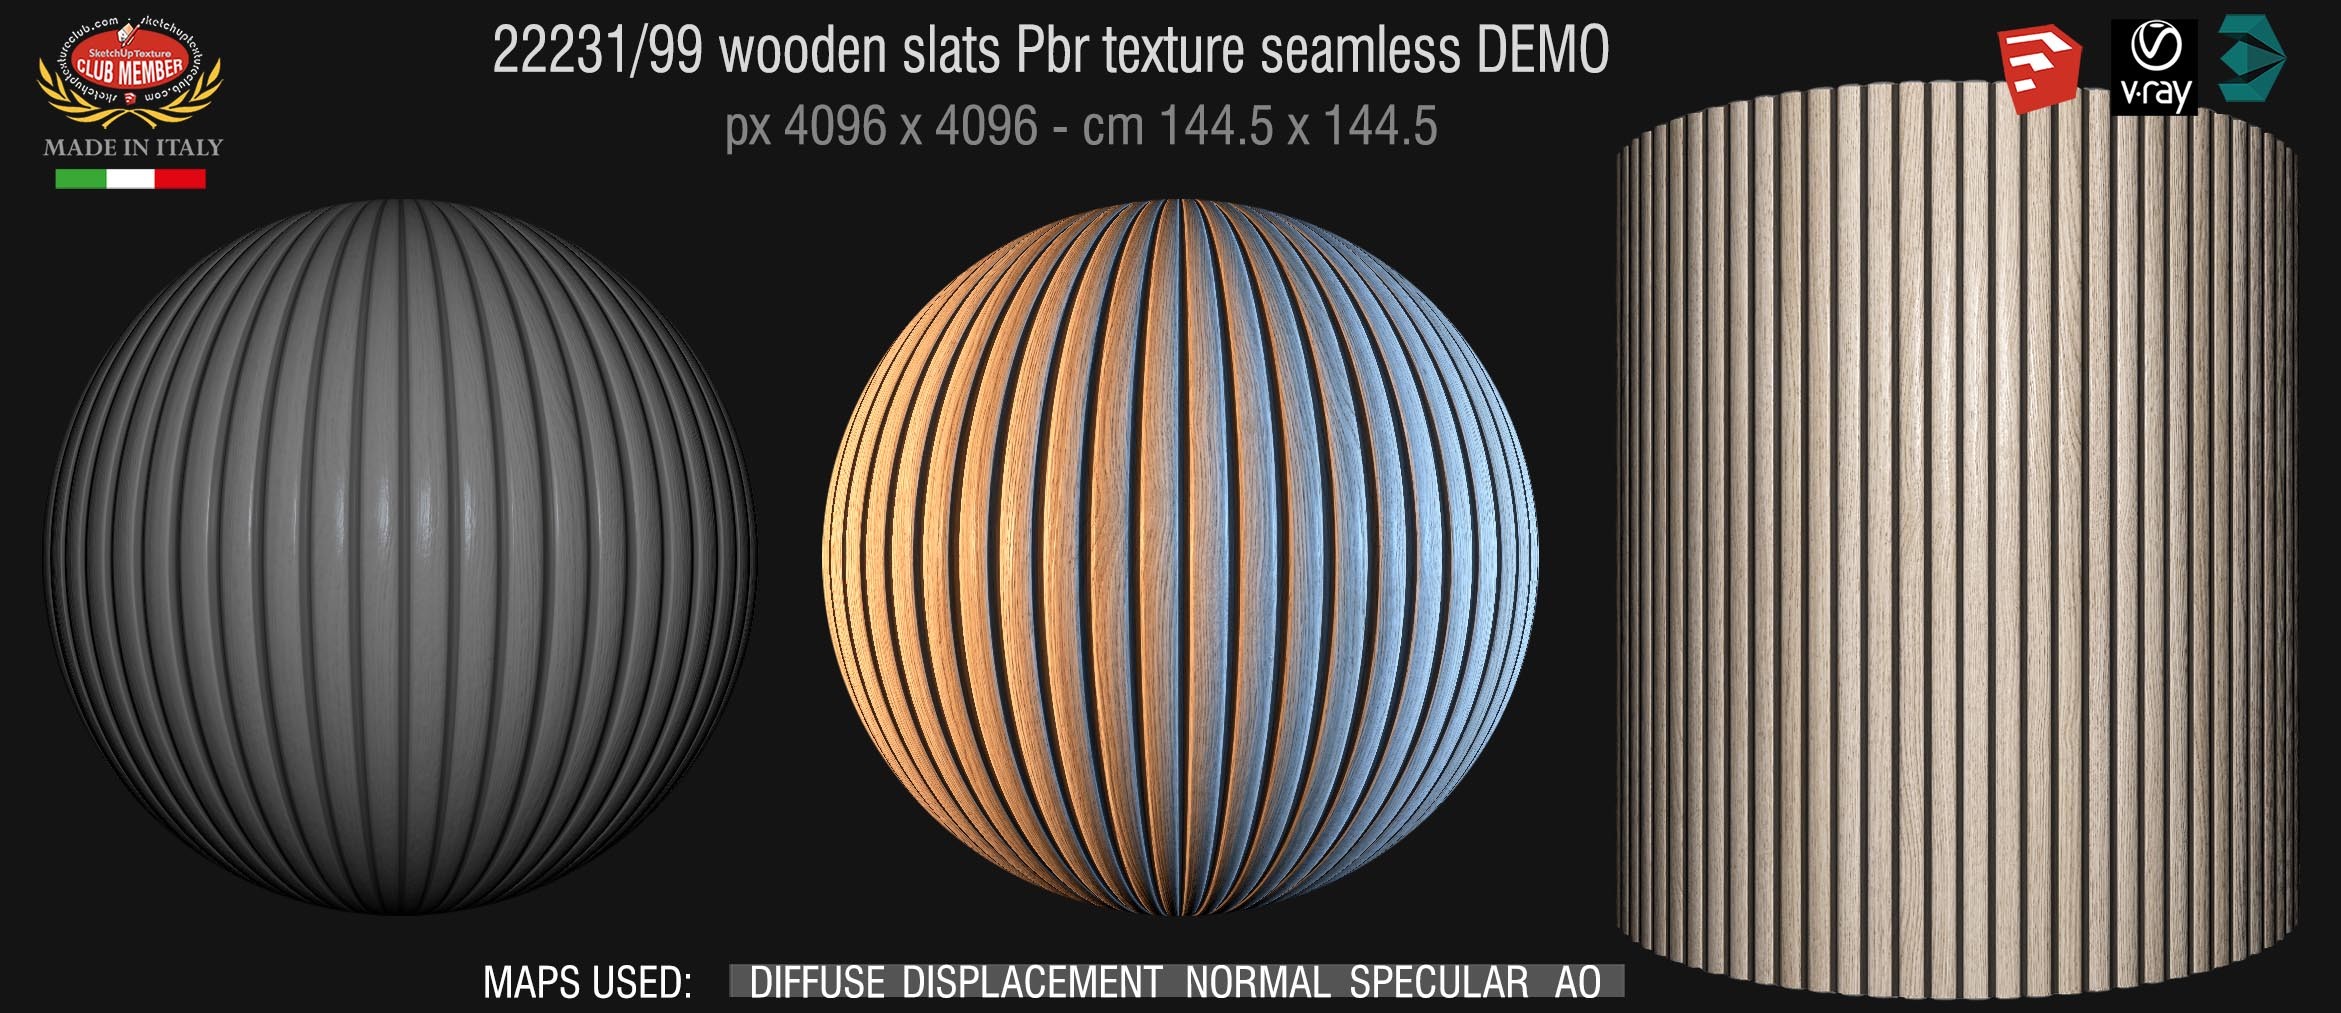 22231/99 wooden slats Pbr texture seamless DEMO